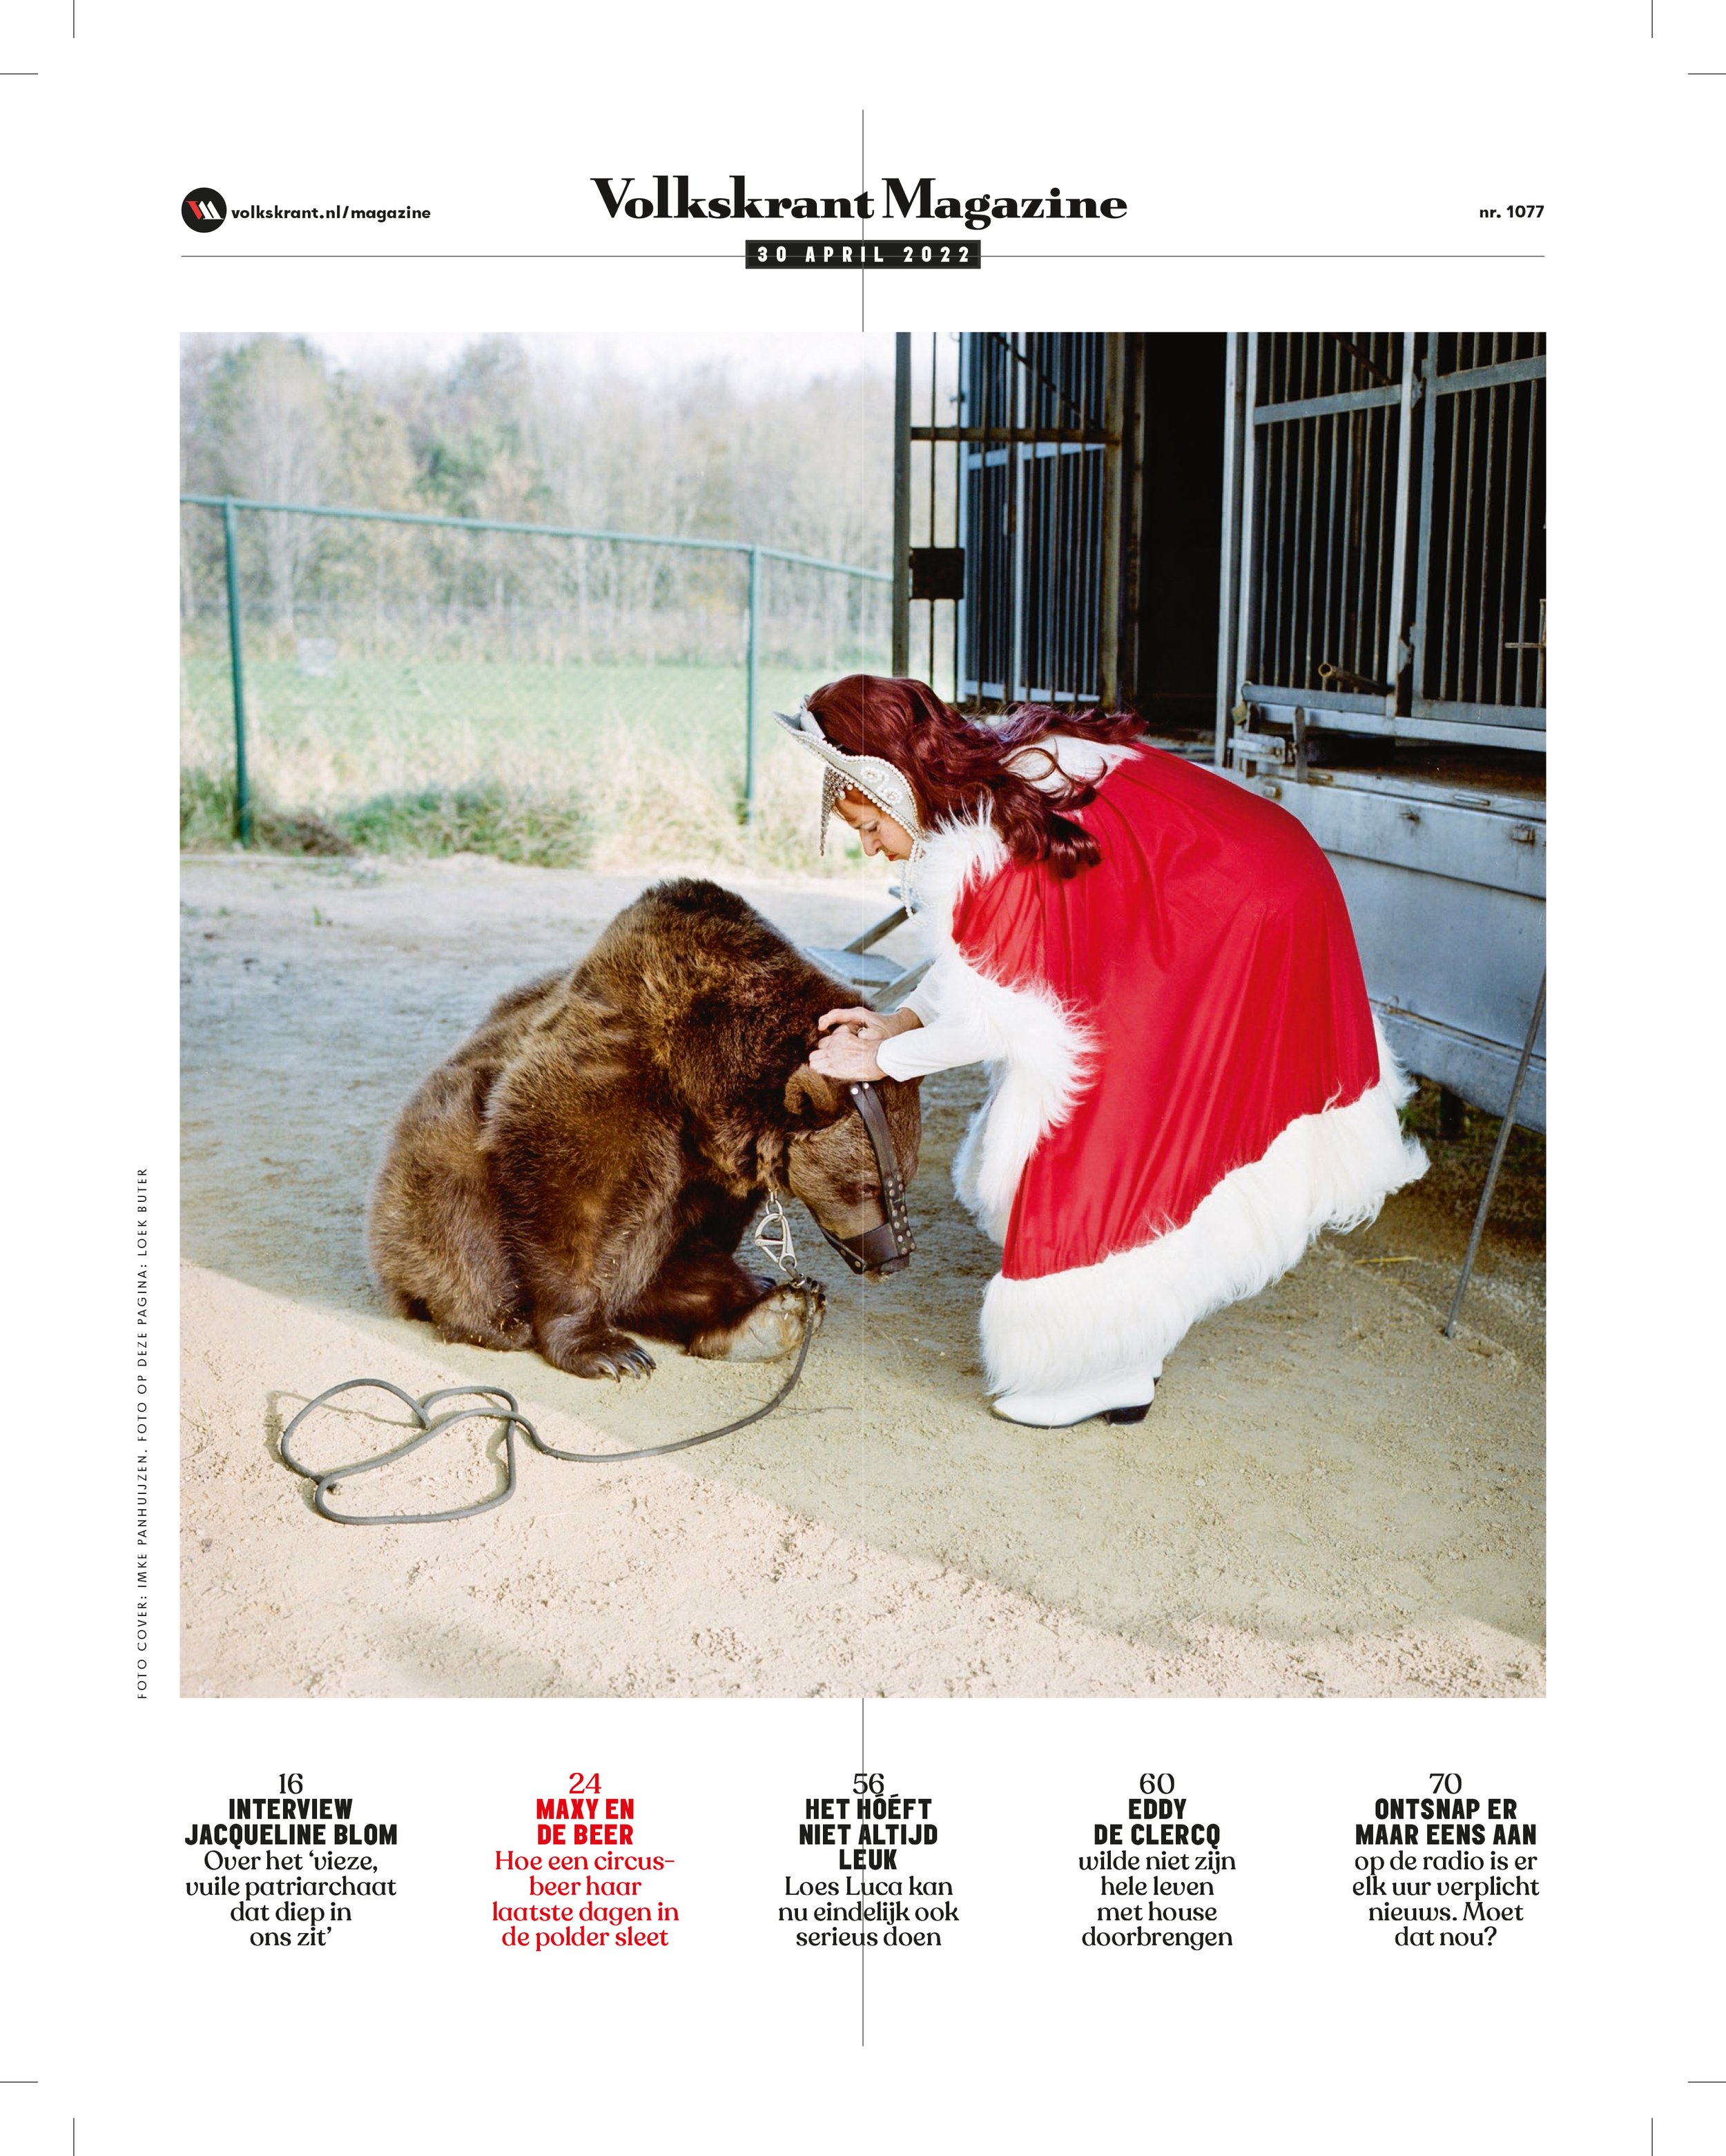 220430 - Een beer in de polder - Volkskrant Magazine_inhoud.jpg